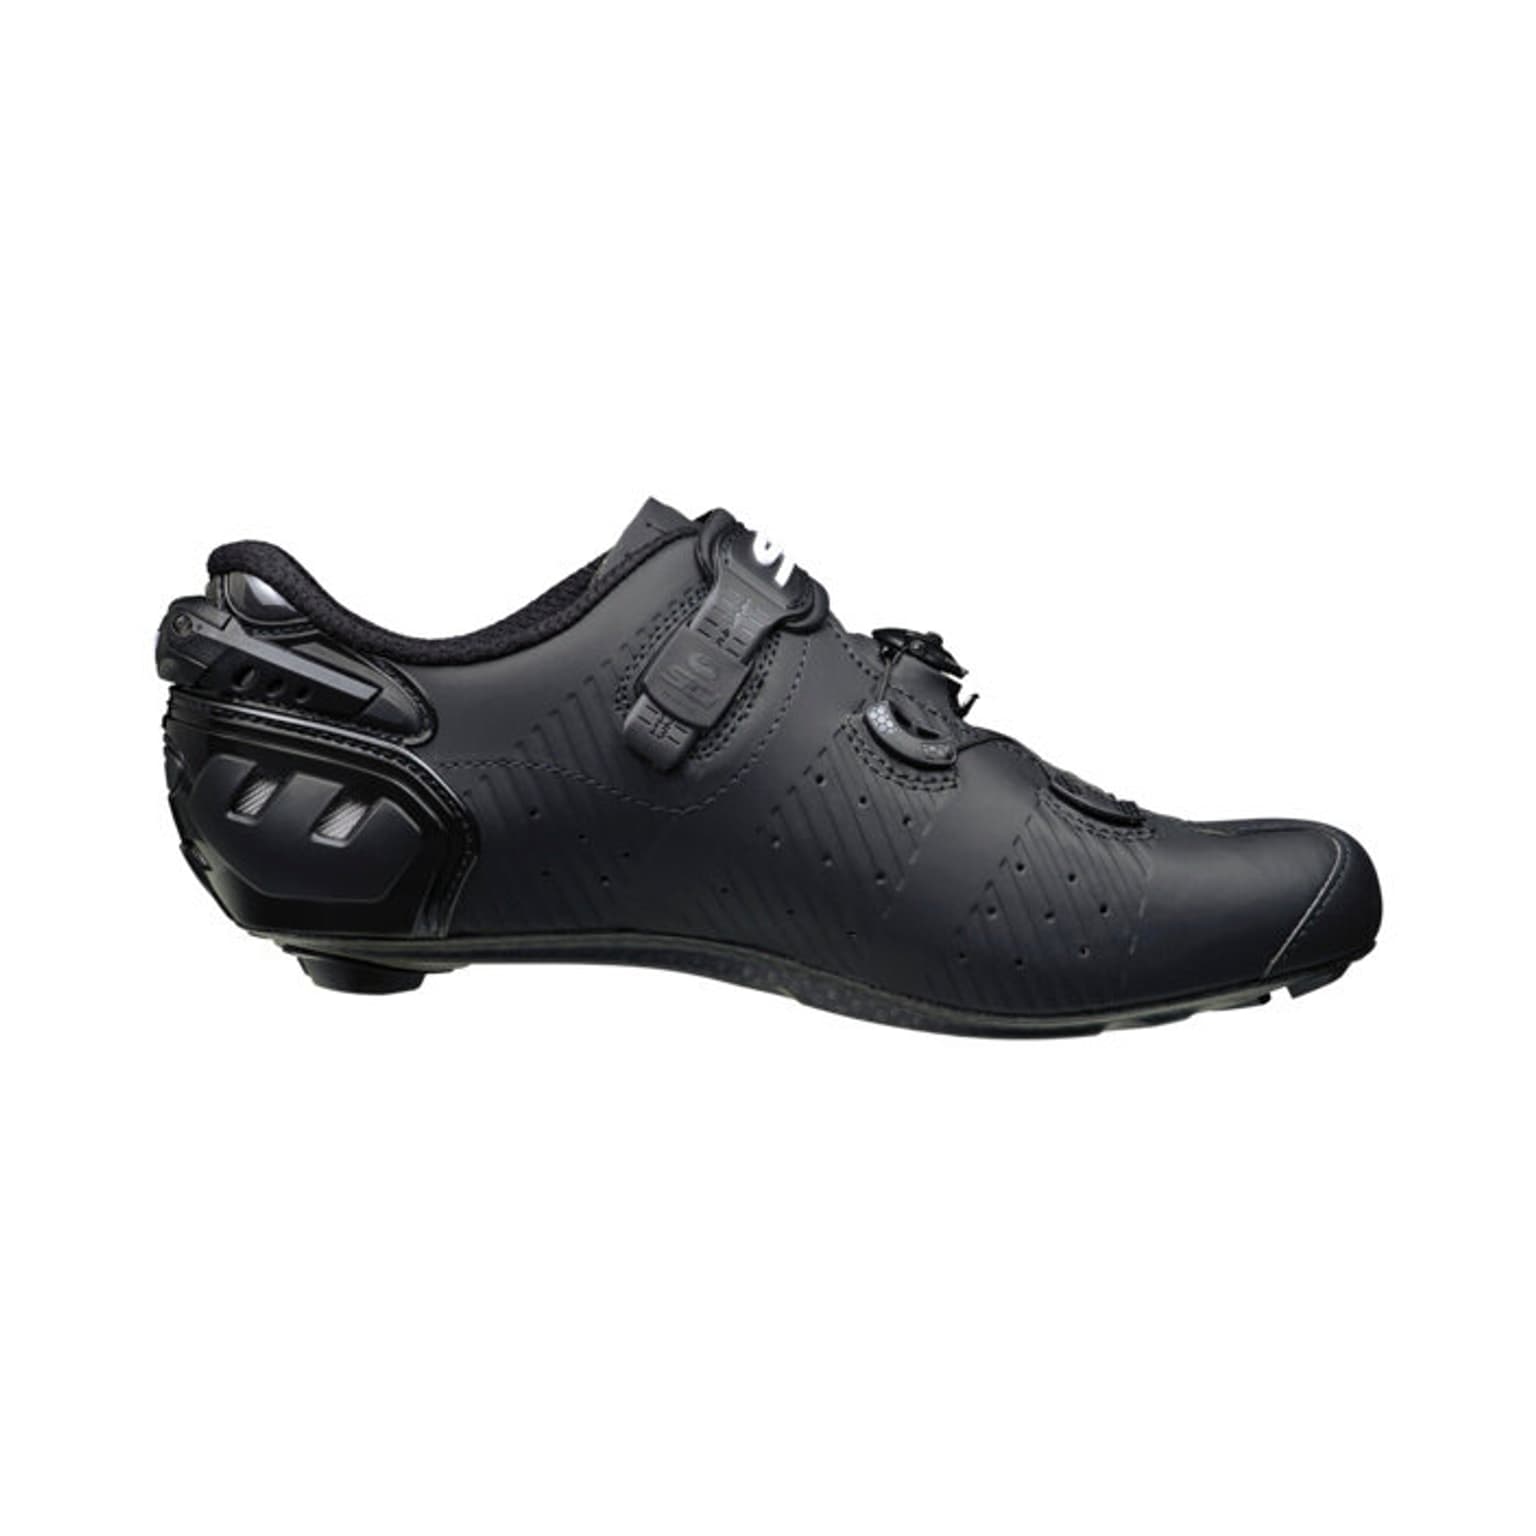 SIDI SIDI RR Wire 2S Carbon Chaussures de cyclisme noir 2